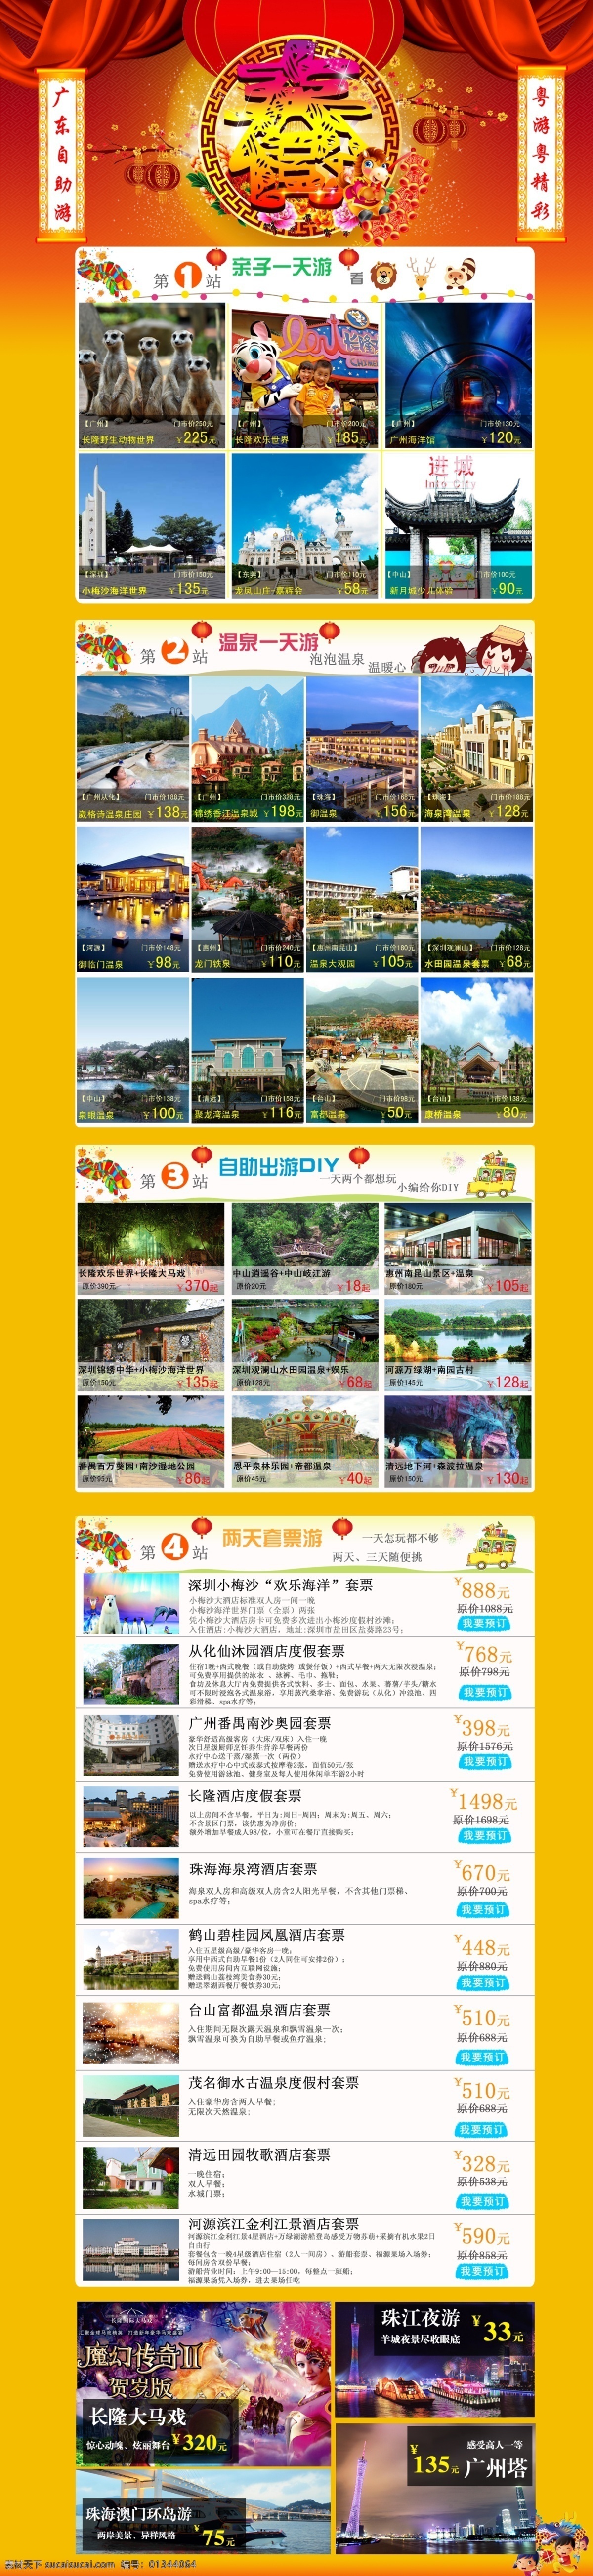 2014年 春节 旅游 网页模板 新春 源文件 中文模板 模板下载 新春旅游 网页素材